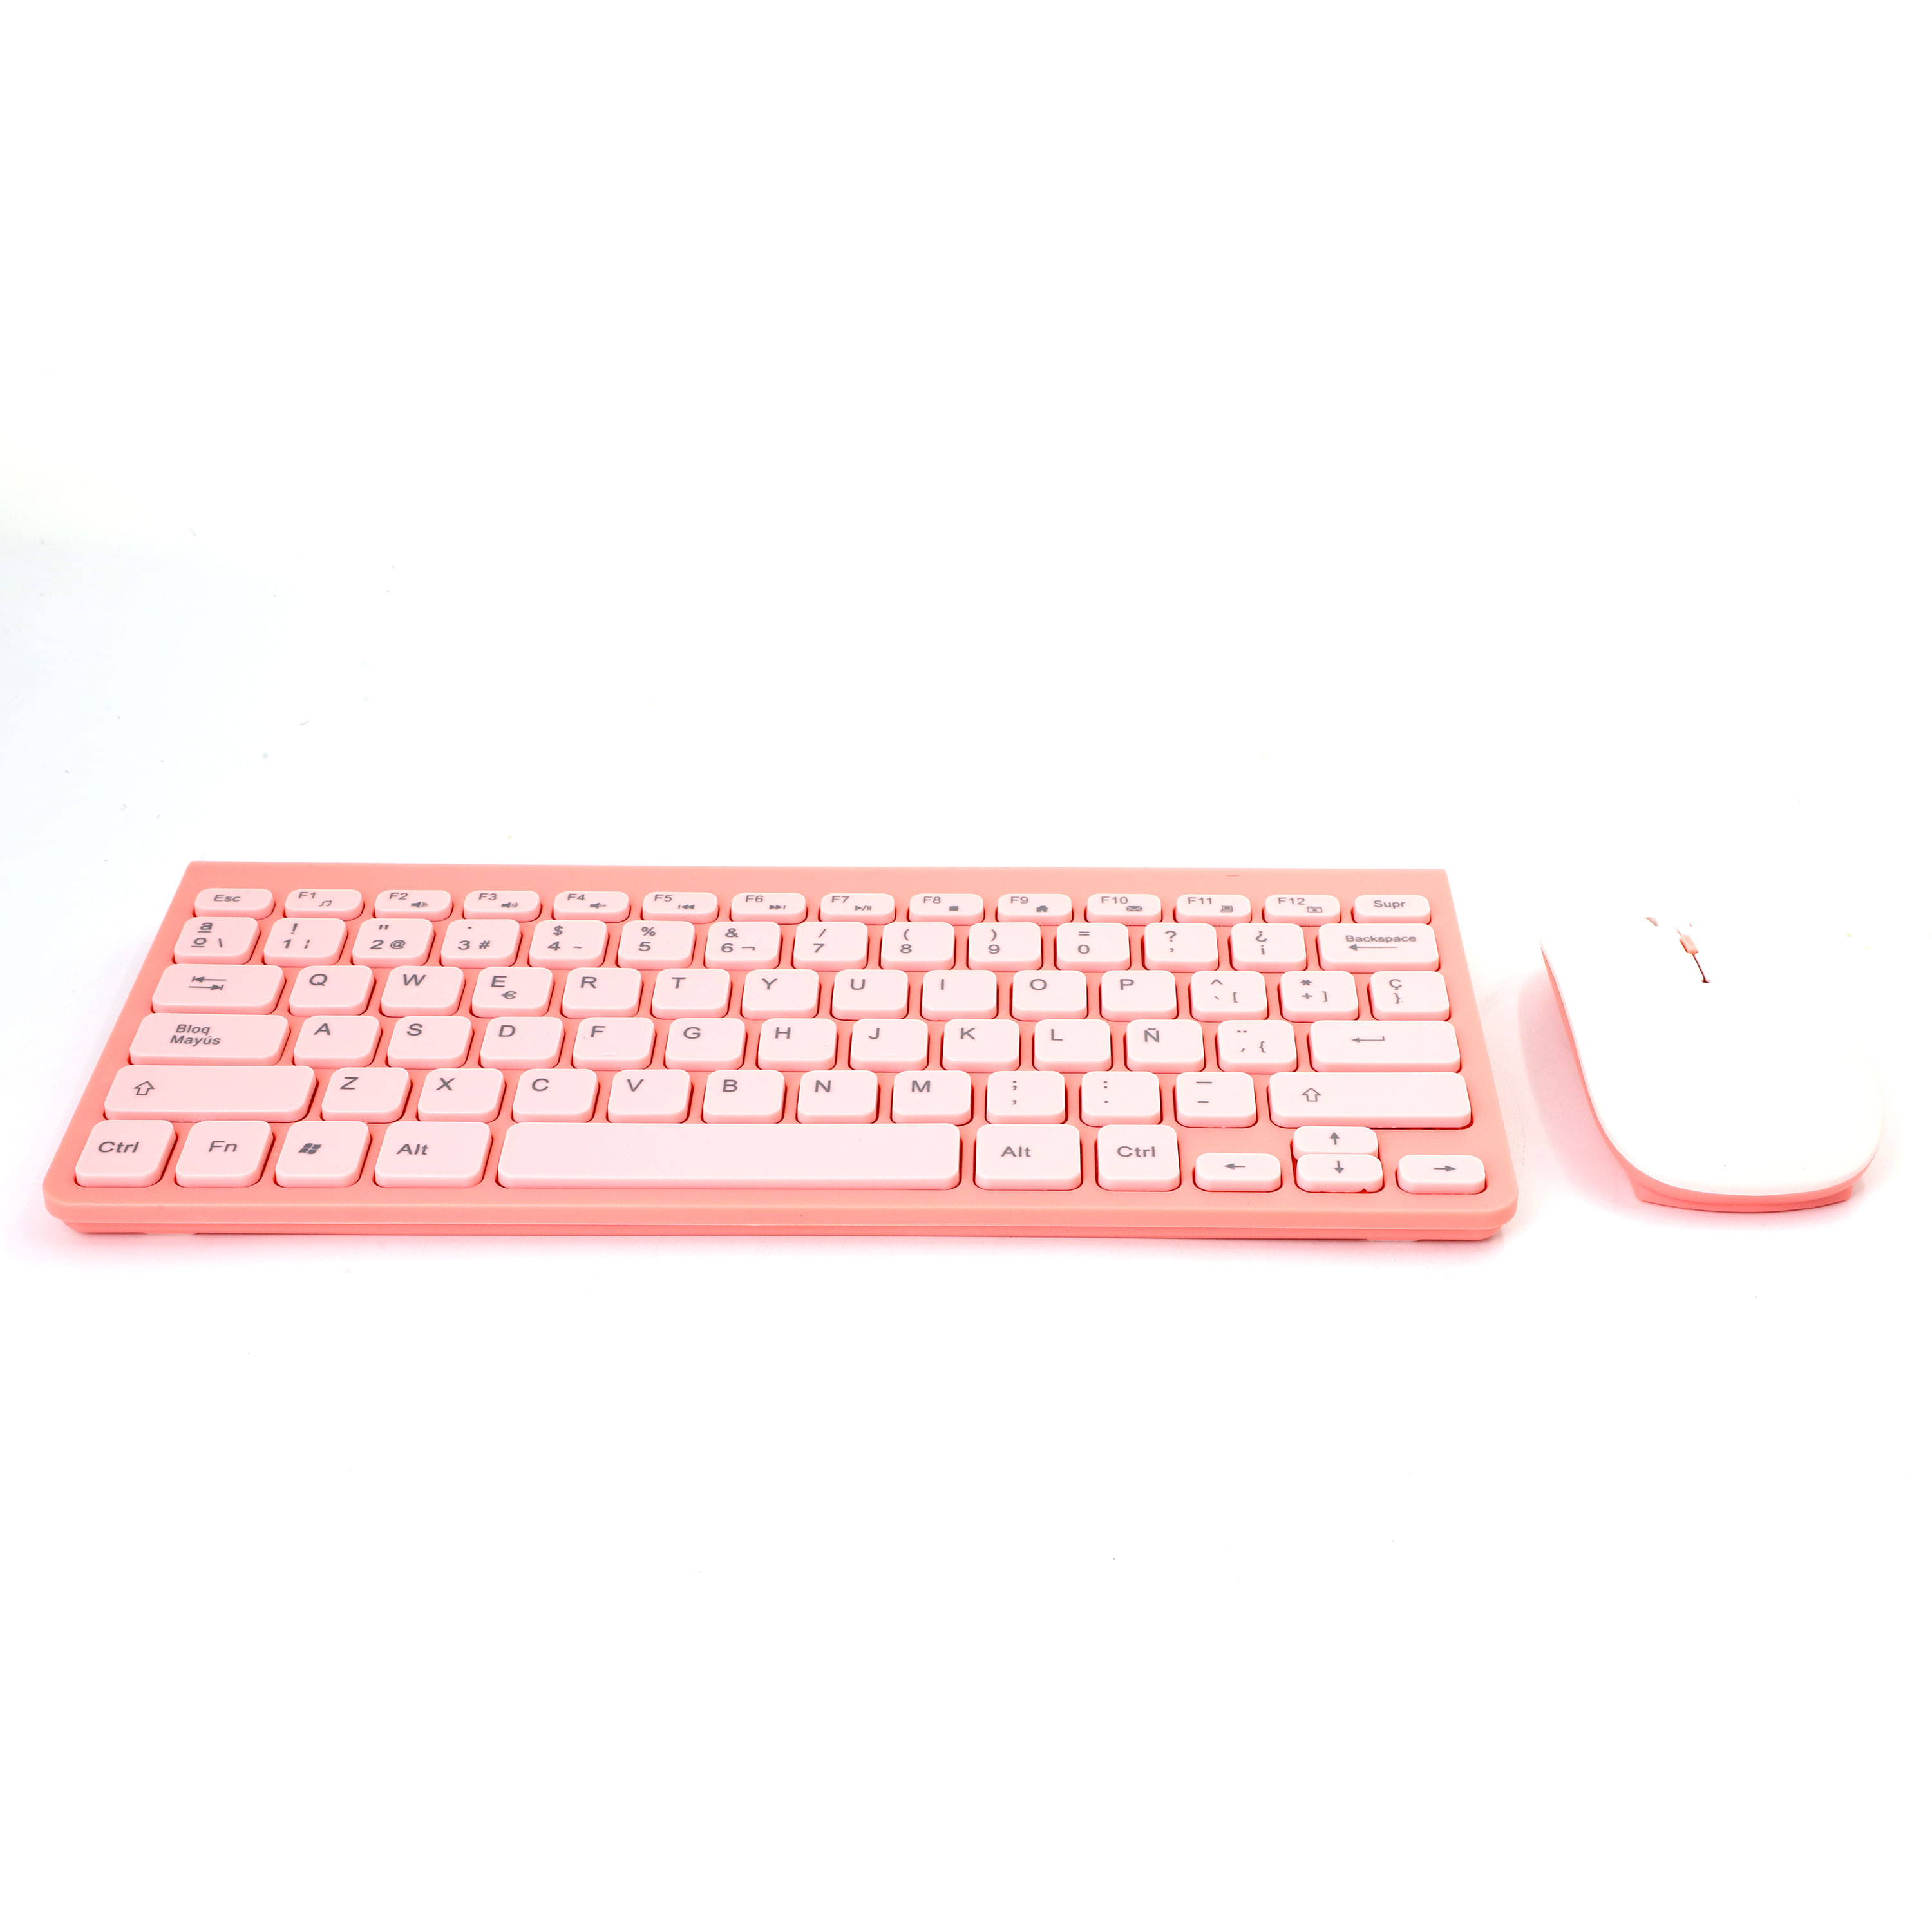 Los mejores kits de teclado y ratón inalámbricos y ergonómicos, Escaparate: compras y ofertas